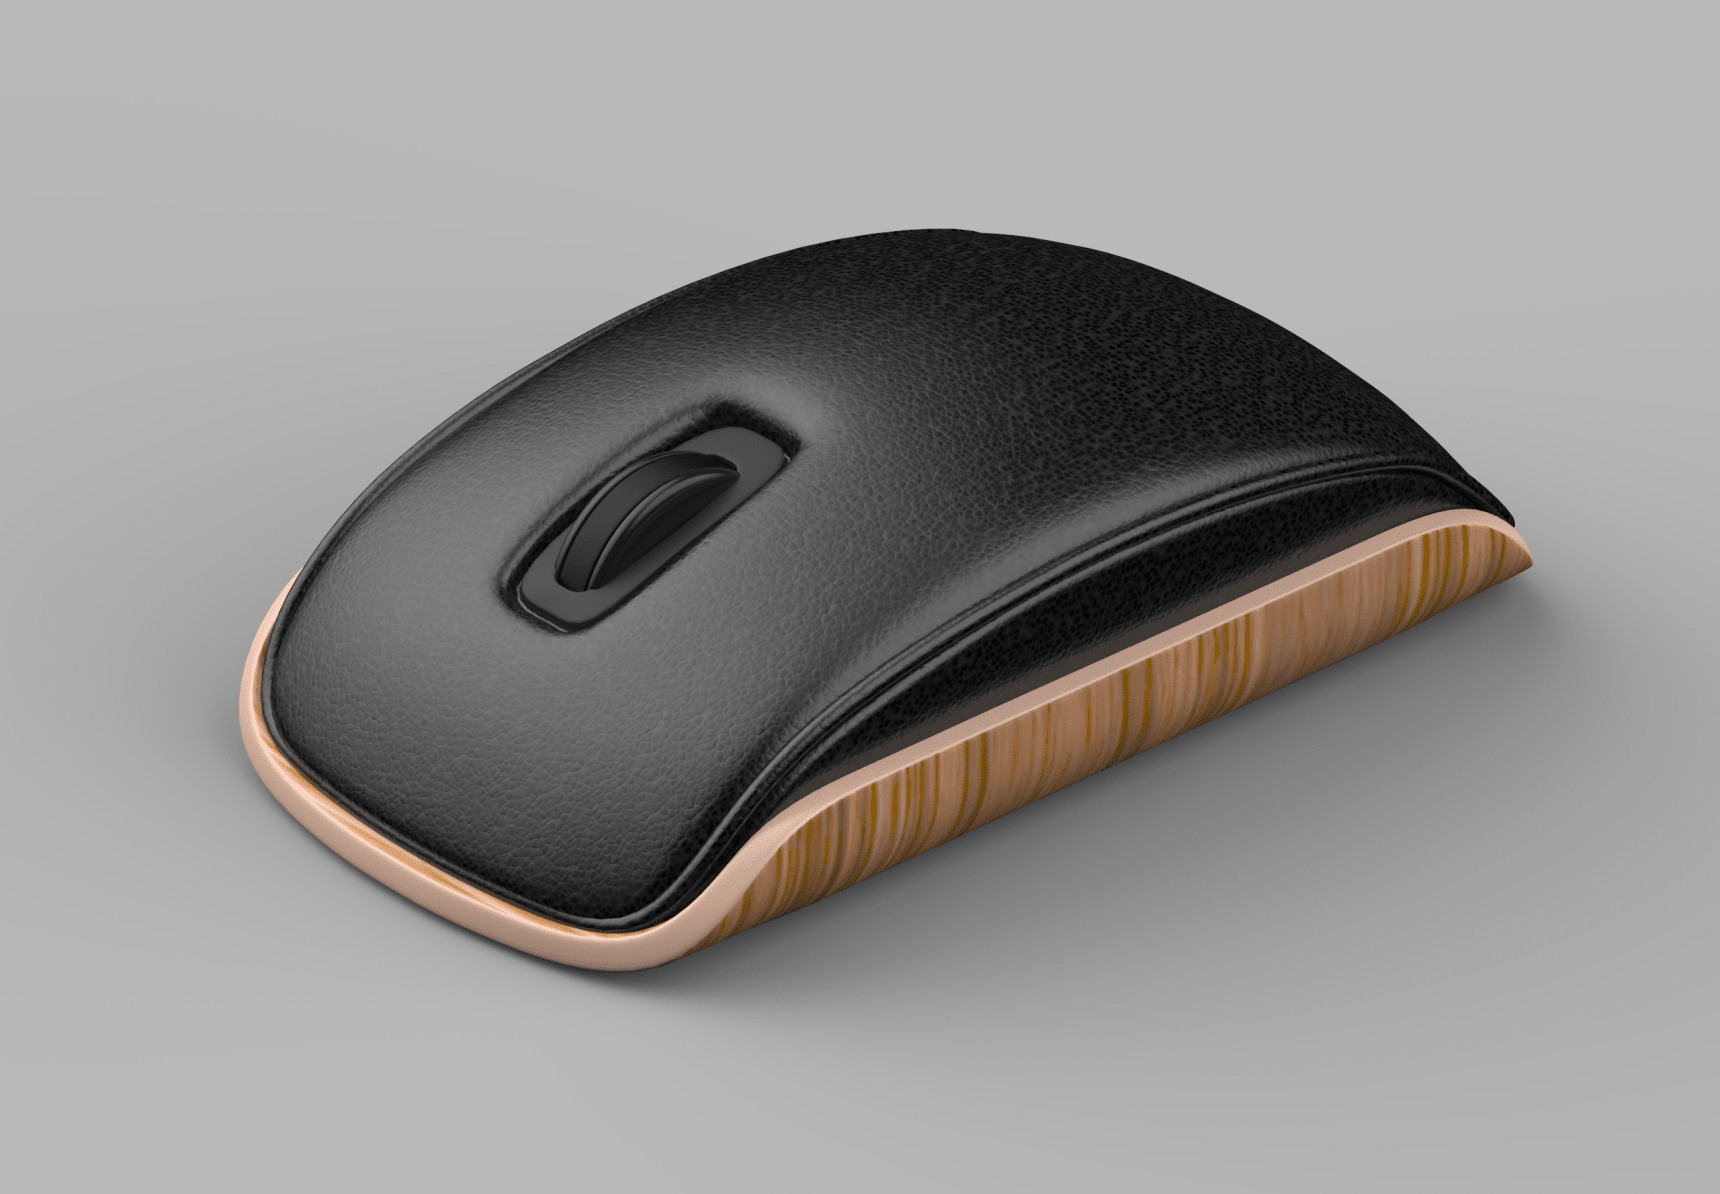 Die Lounge Mouse: Eine durch Eames inspirierte Maus von Designer Shane Chen 1